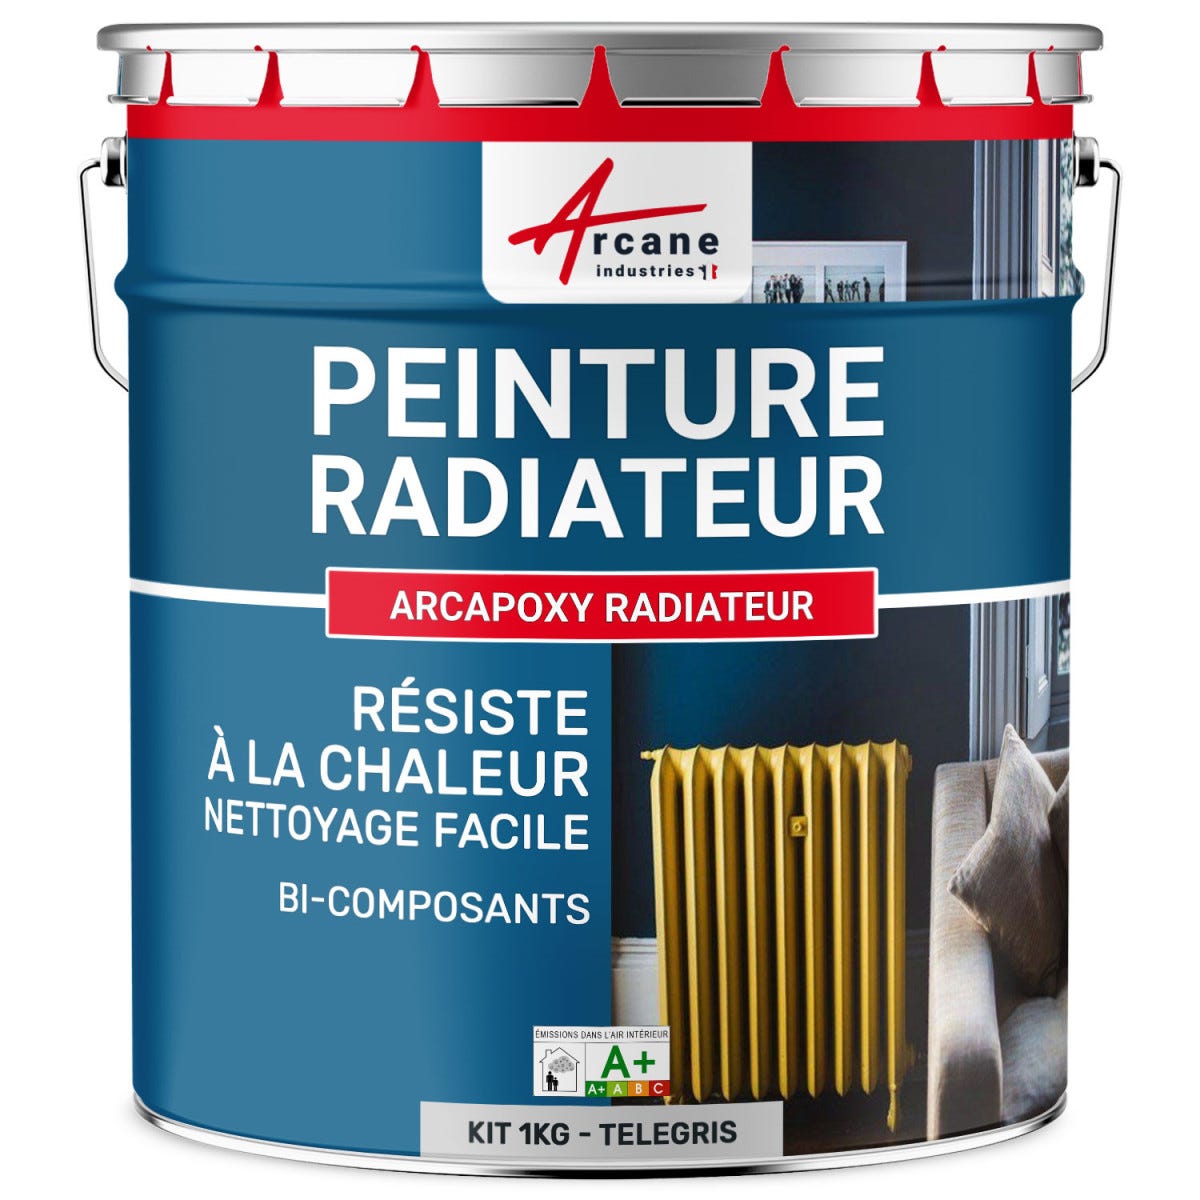 Peinture Radiateur fonte acier alu - PEINTURE RADIATEUR - 1 kg (jusqu'à 5 m² en 2 couches) - Télégris 4 - RAL 7047 - ARCANE INDUSTRIES 5